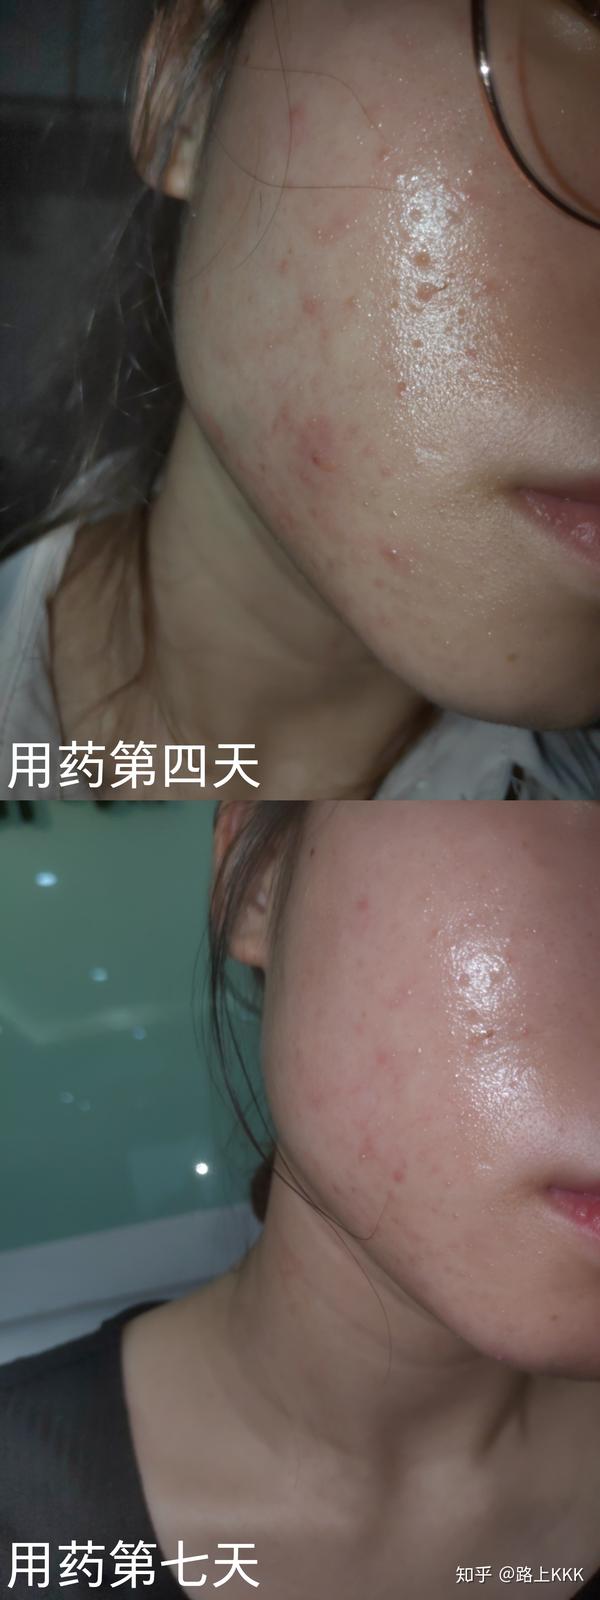 病例分享记录下自己脸潮红长闭口粉刺痘痘丘疹到恢复的过程